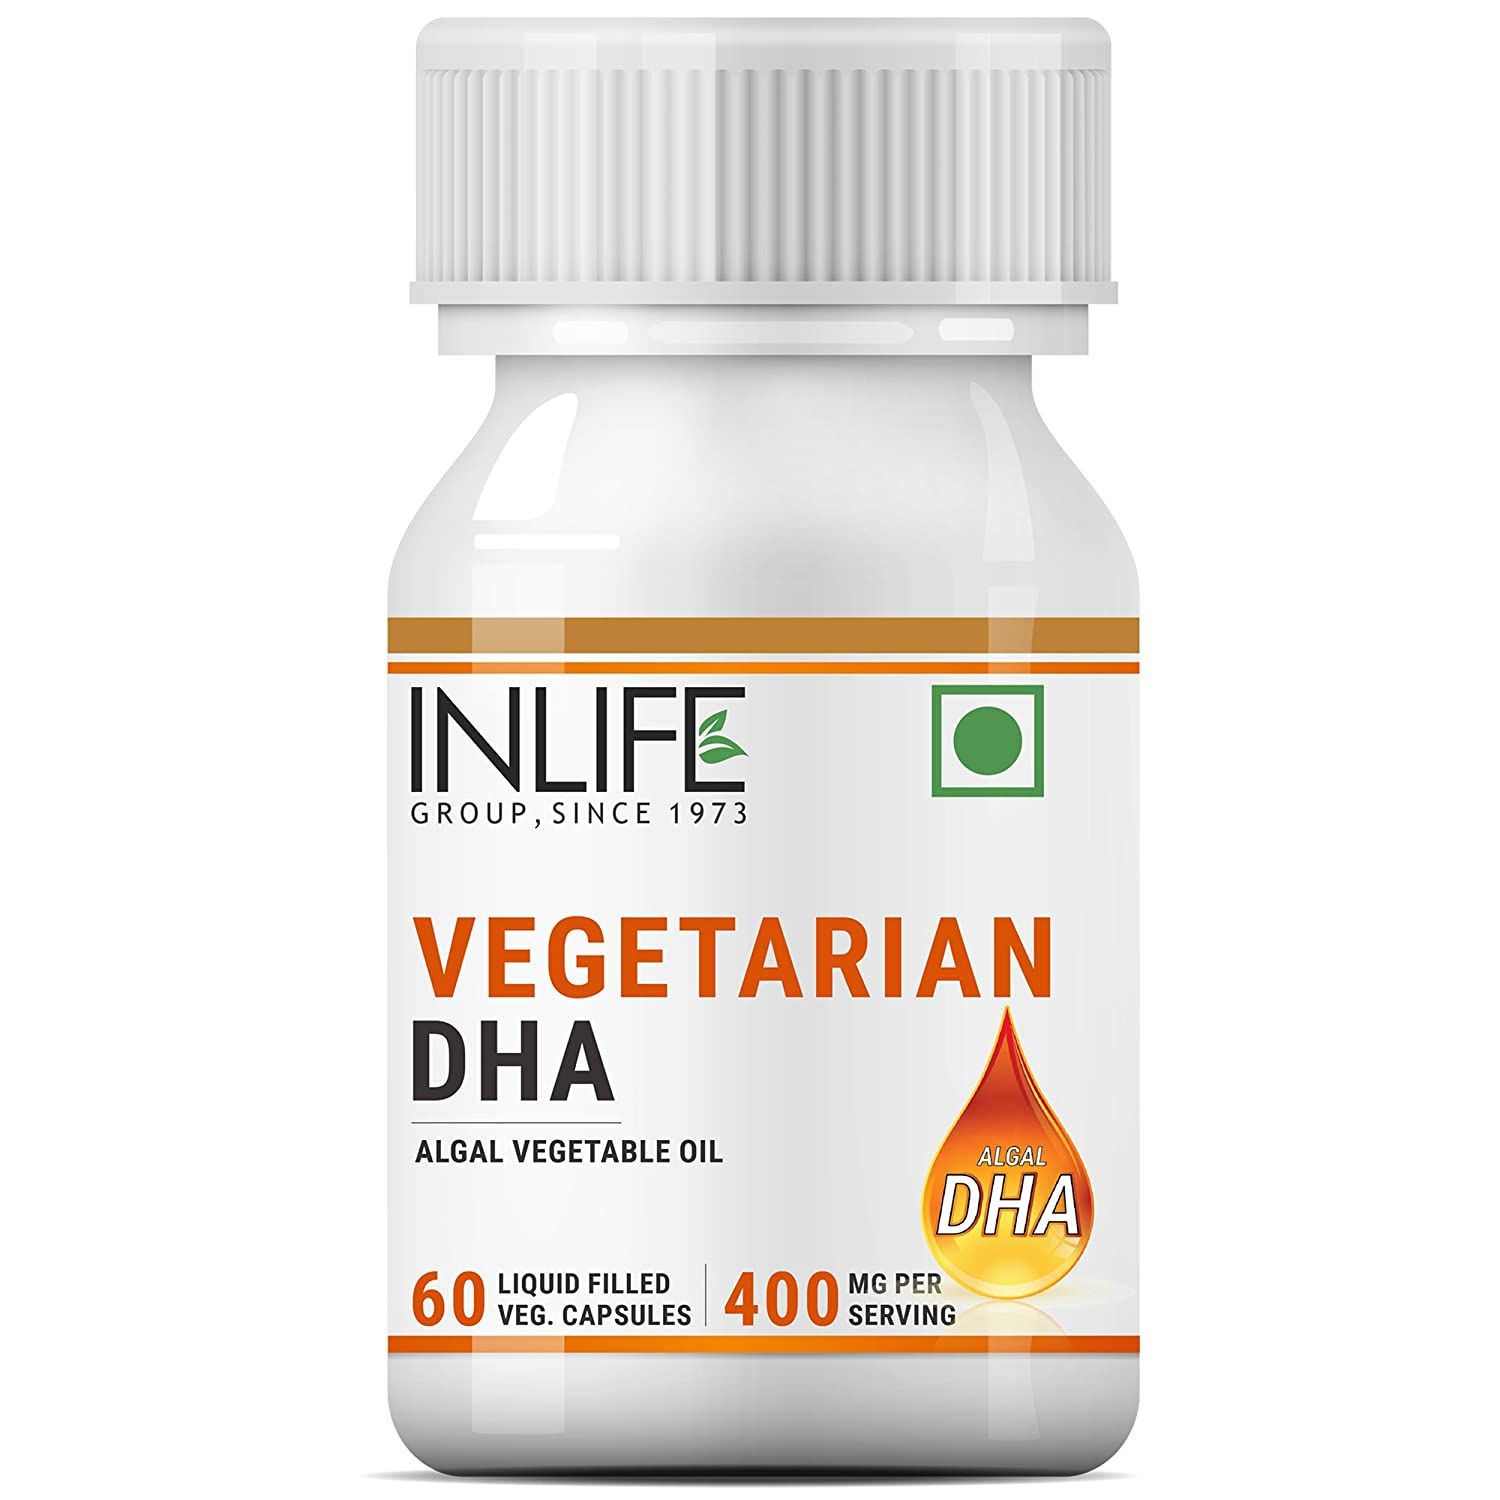 Inlife Vegetarian DHA Image